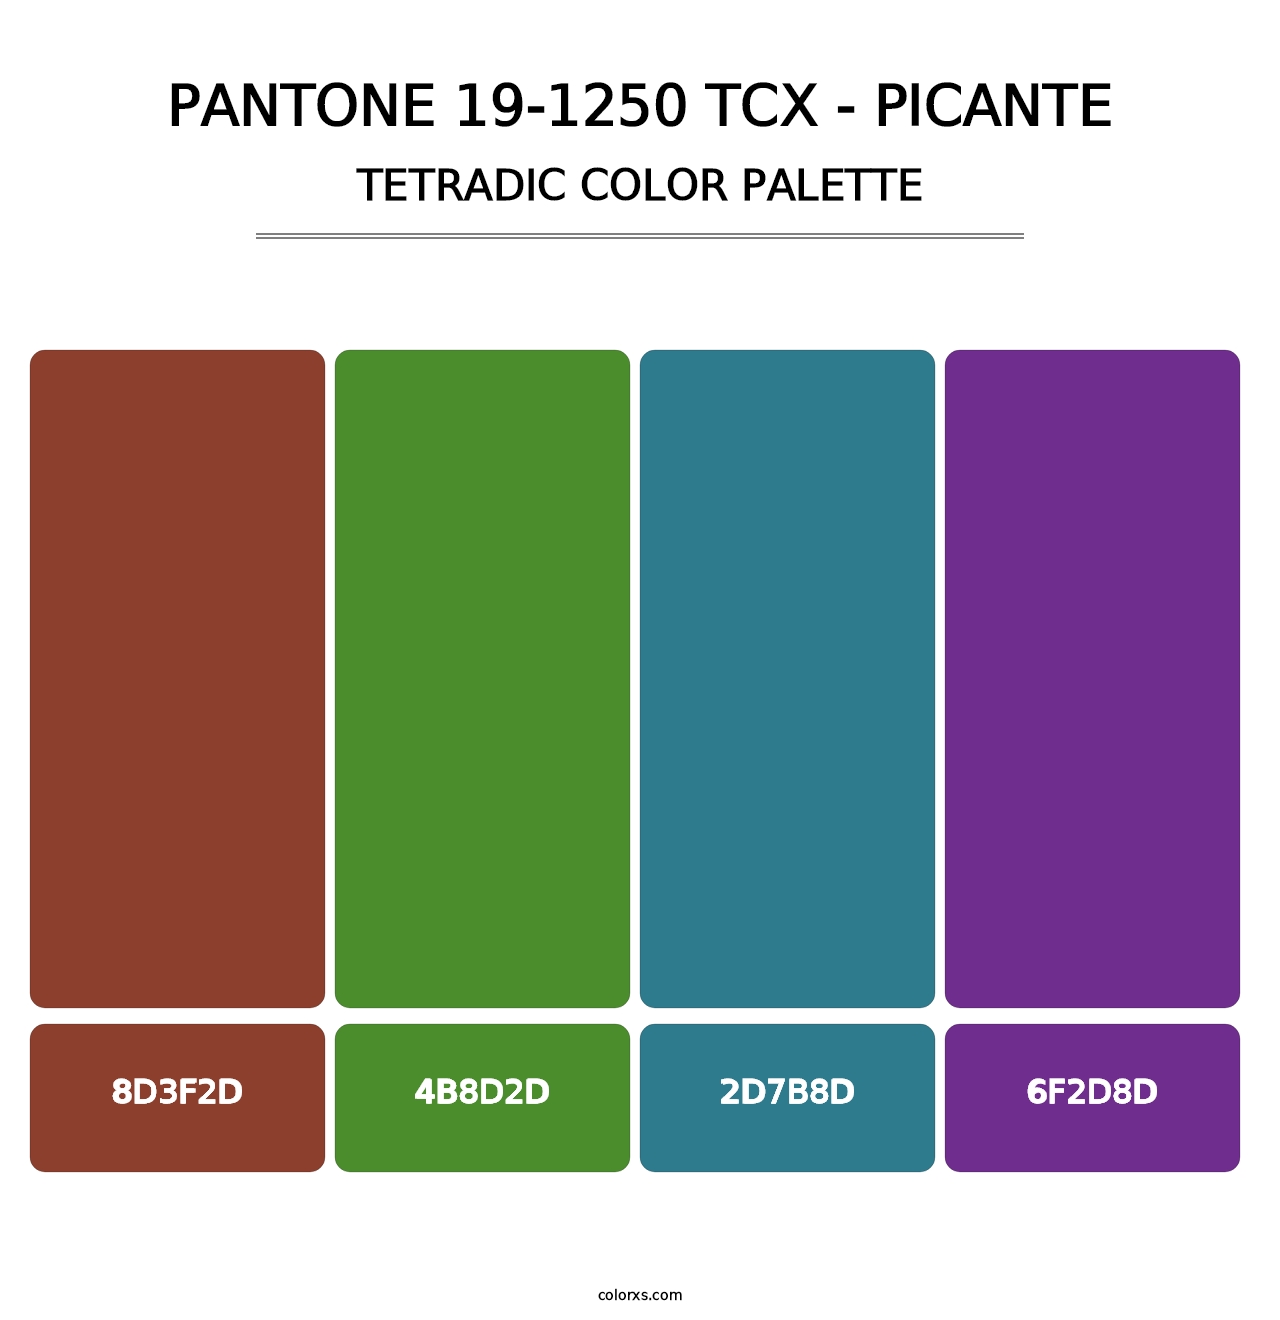 PANTONE 19-1250 TCX - Picante - Tetradic Color Palette